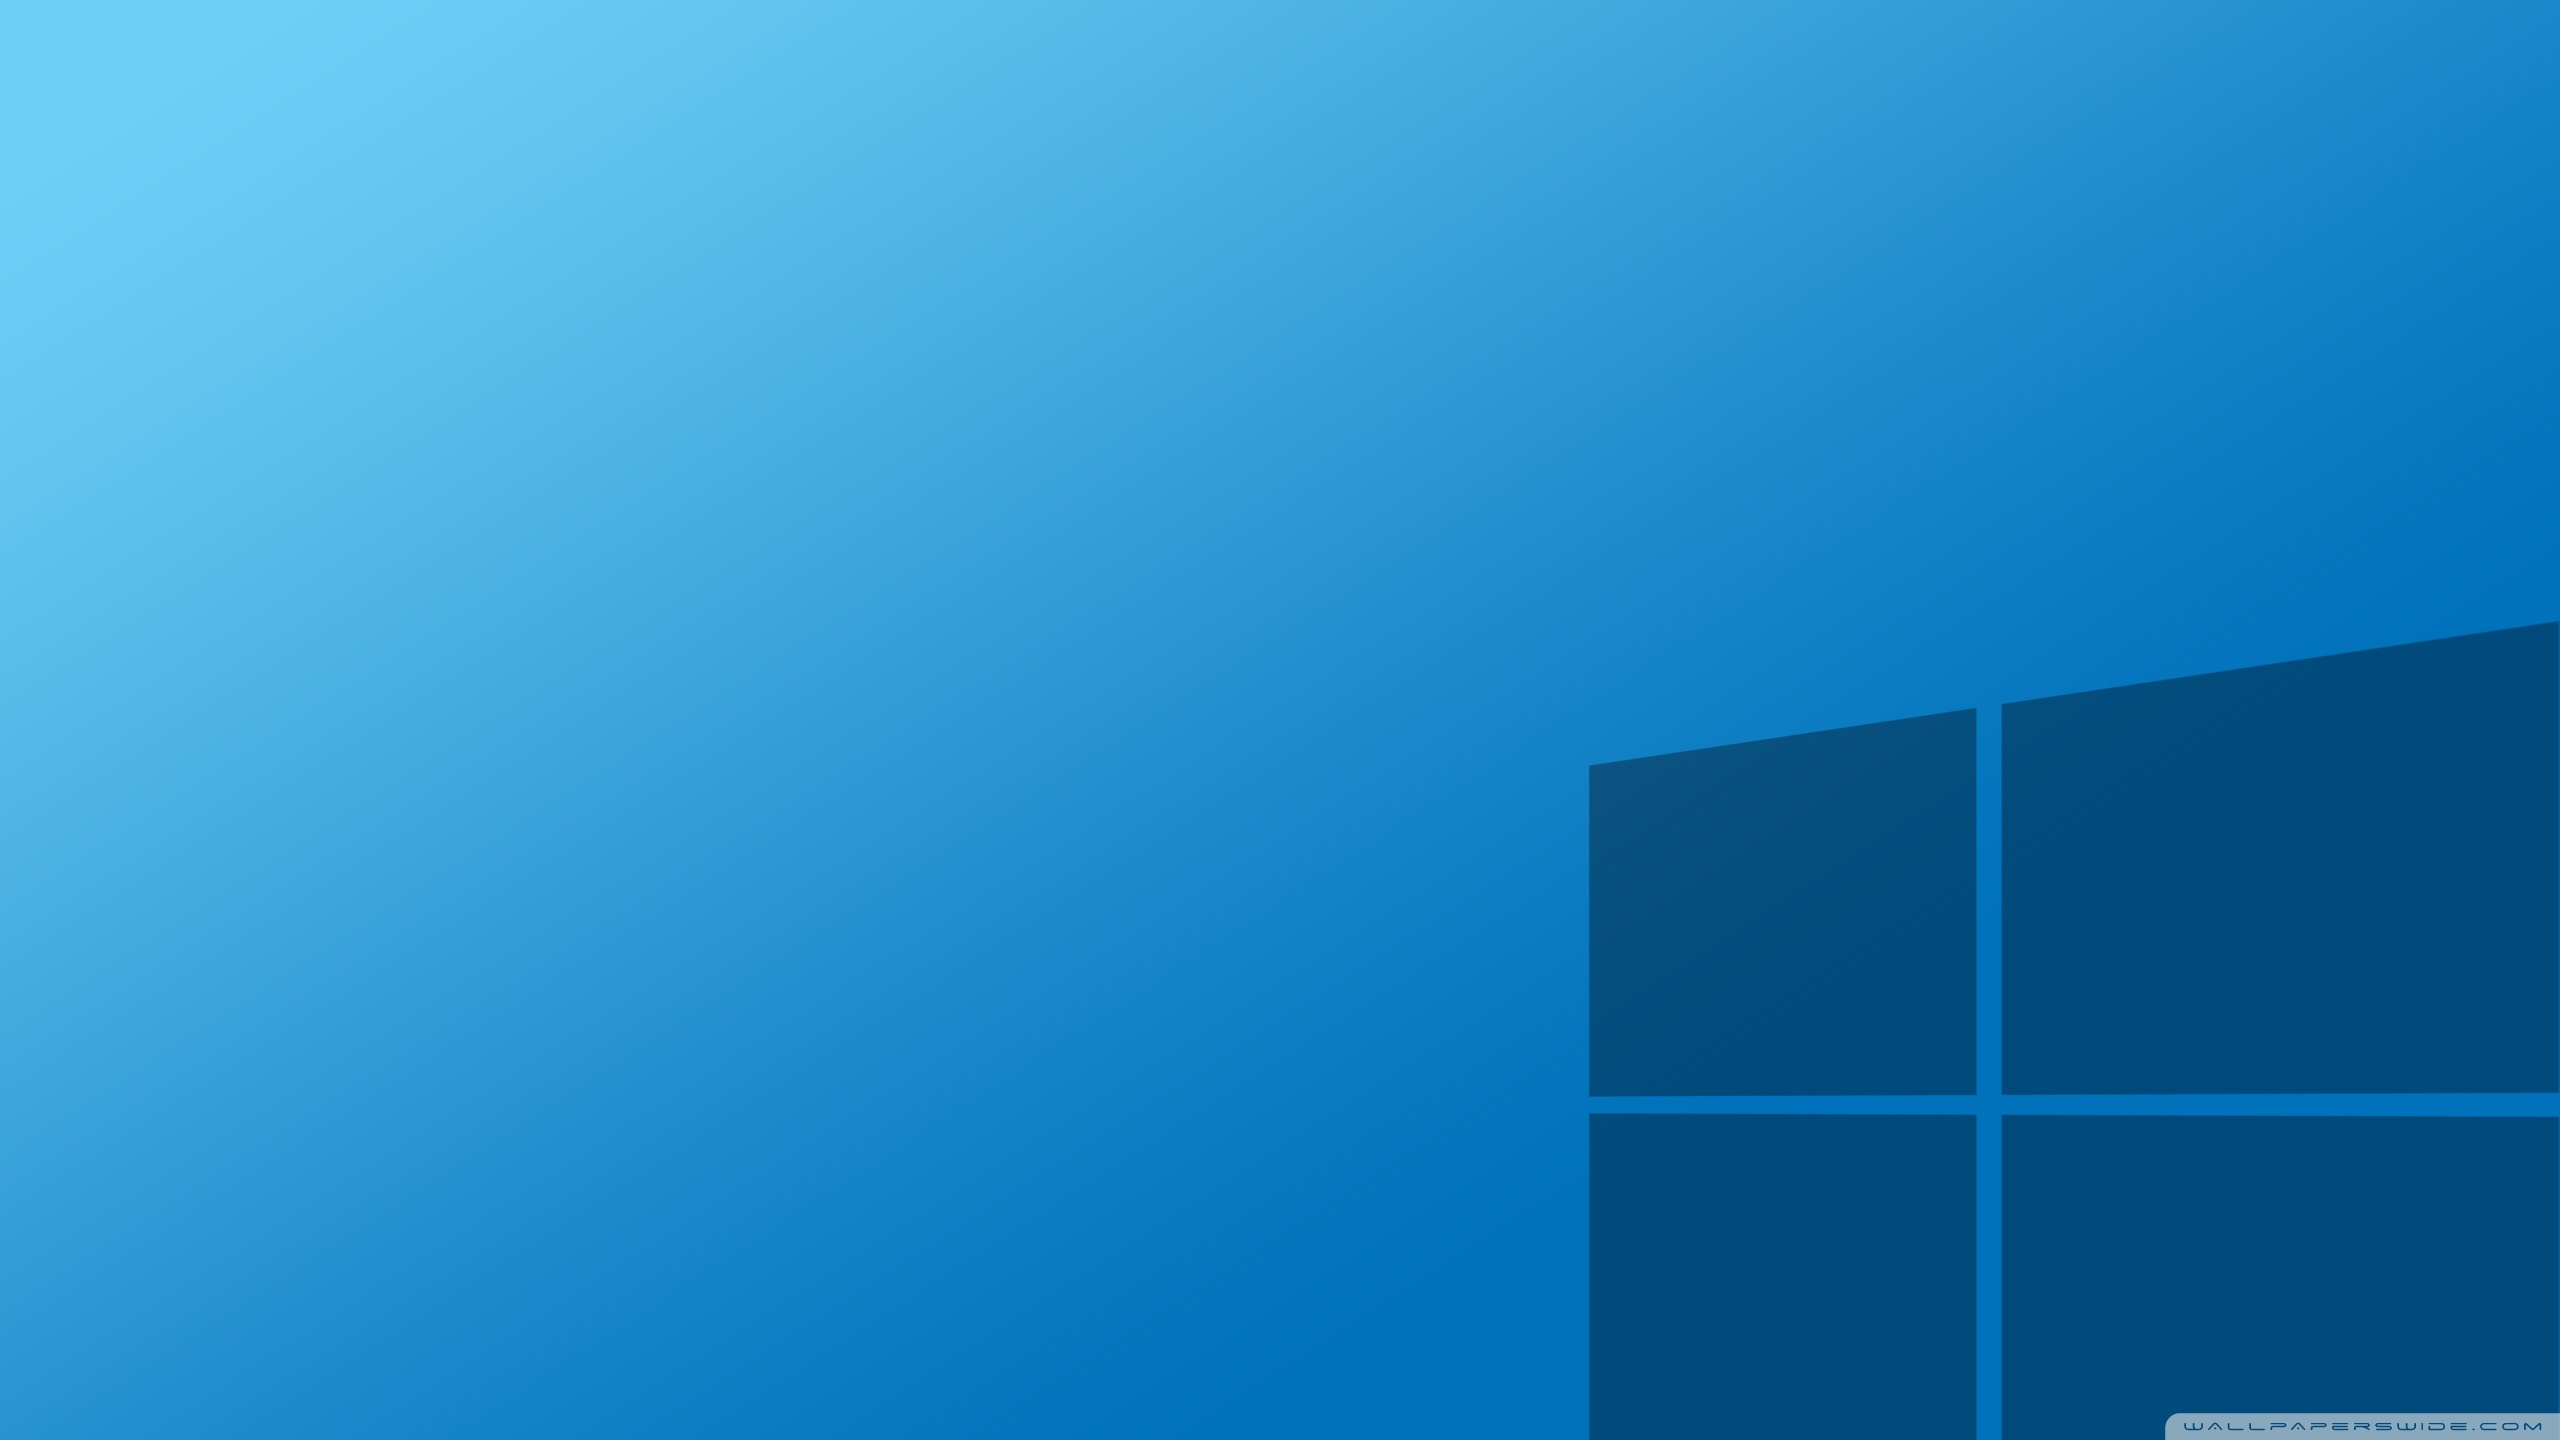 Windows 10 Wallpaper Full HD [2560x1440]   Free wallpaper full hd